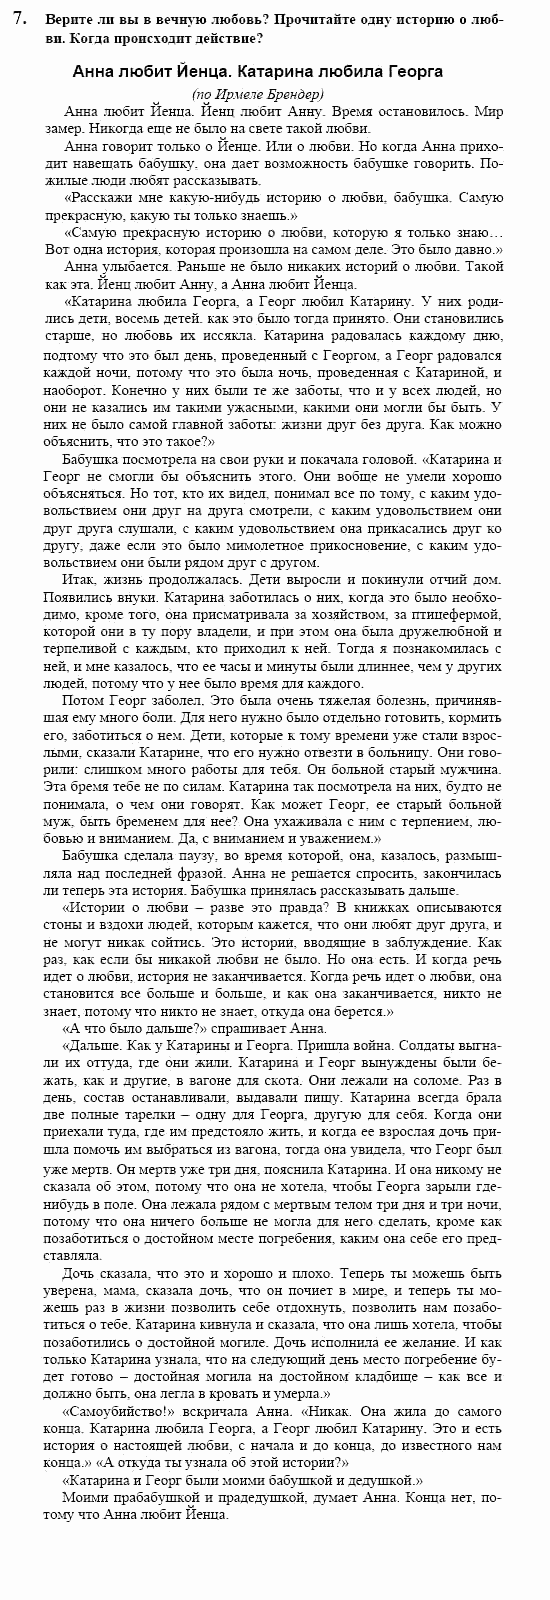 Немецкий язык, 10 класс, Воронина, Карелина, 2002, V Задание: text